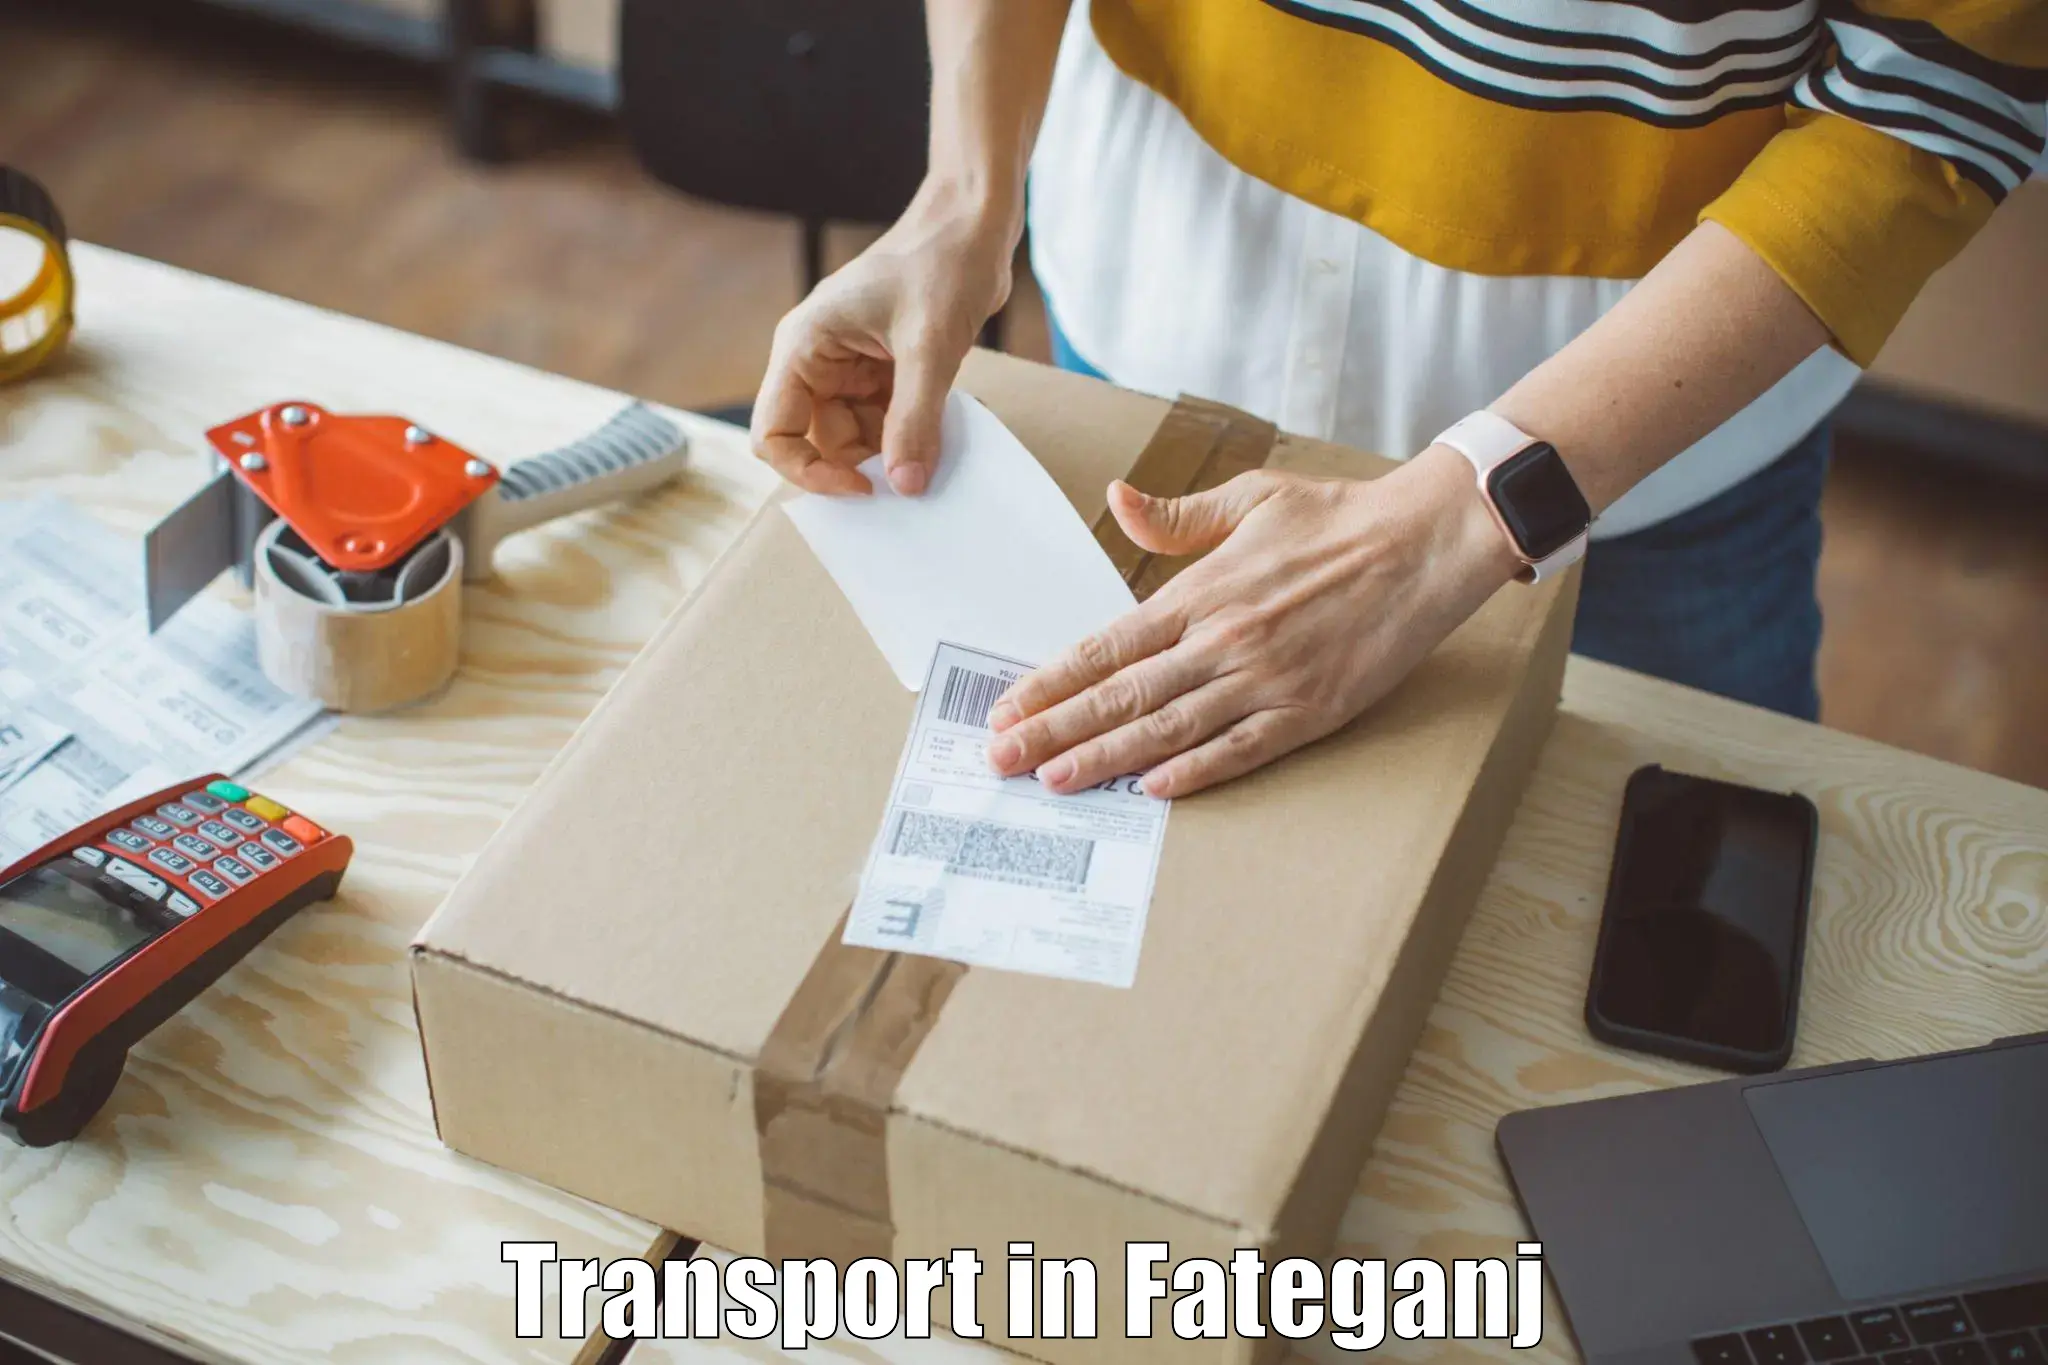 Express transport services in Fateganj